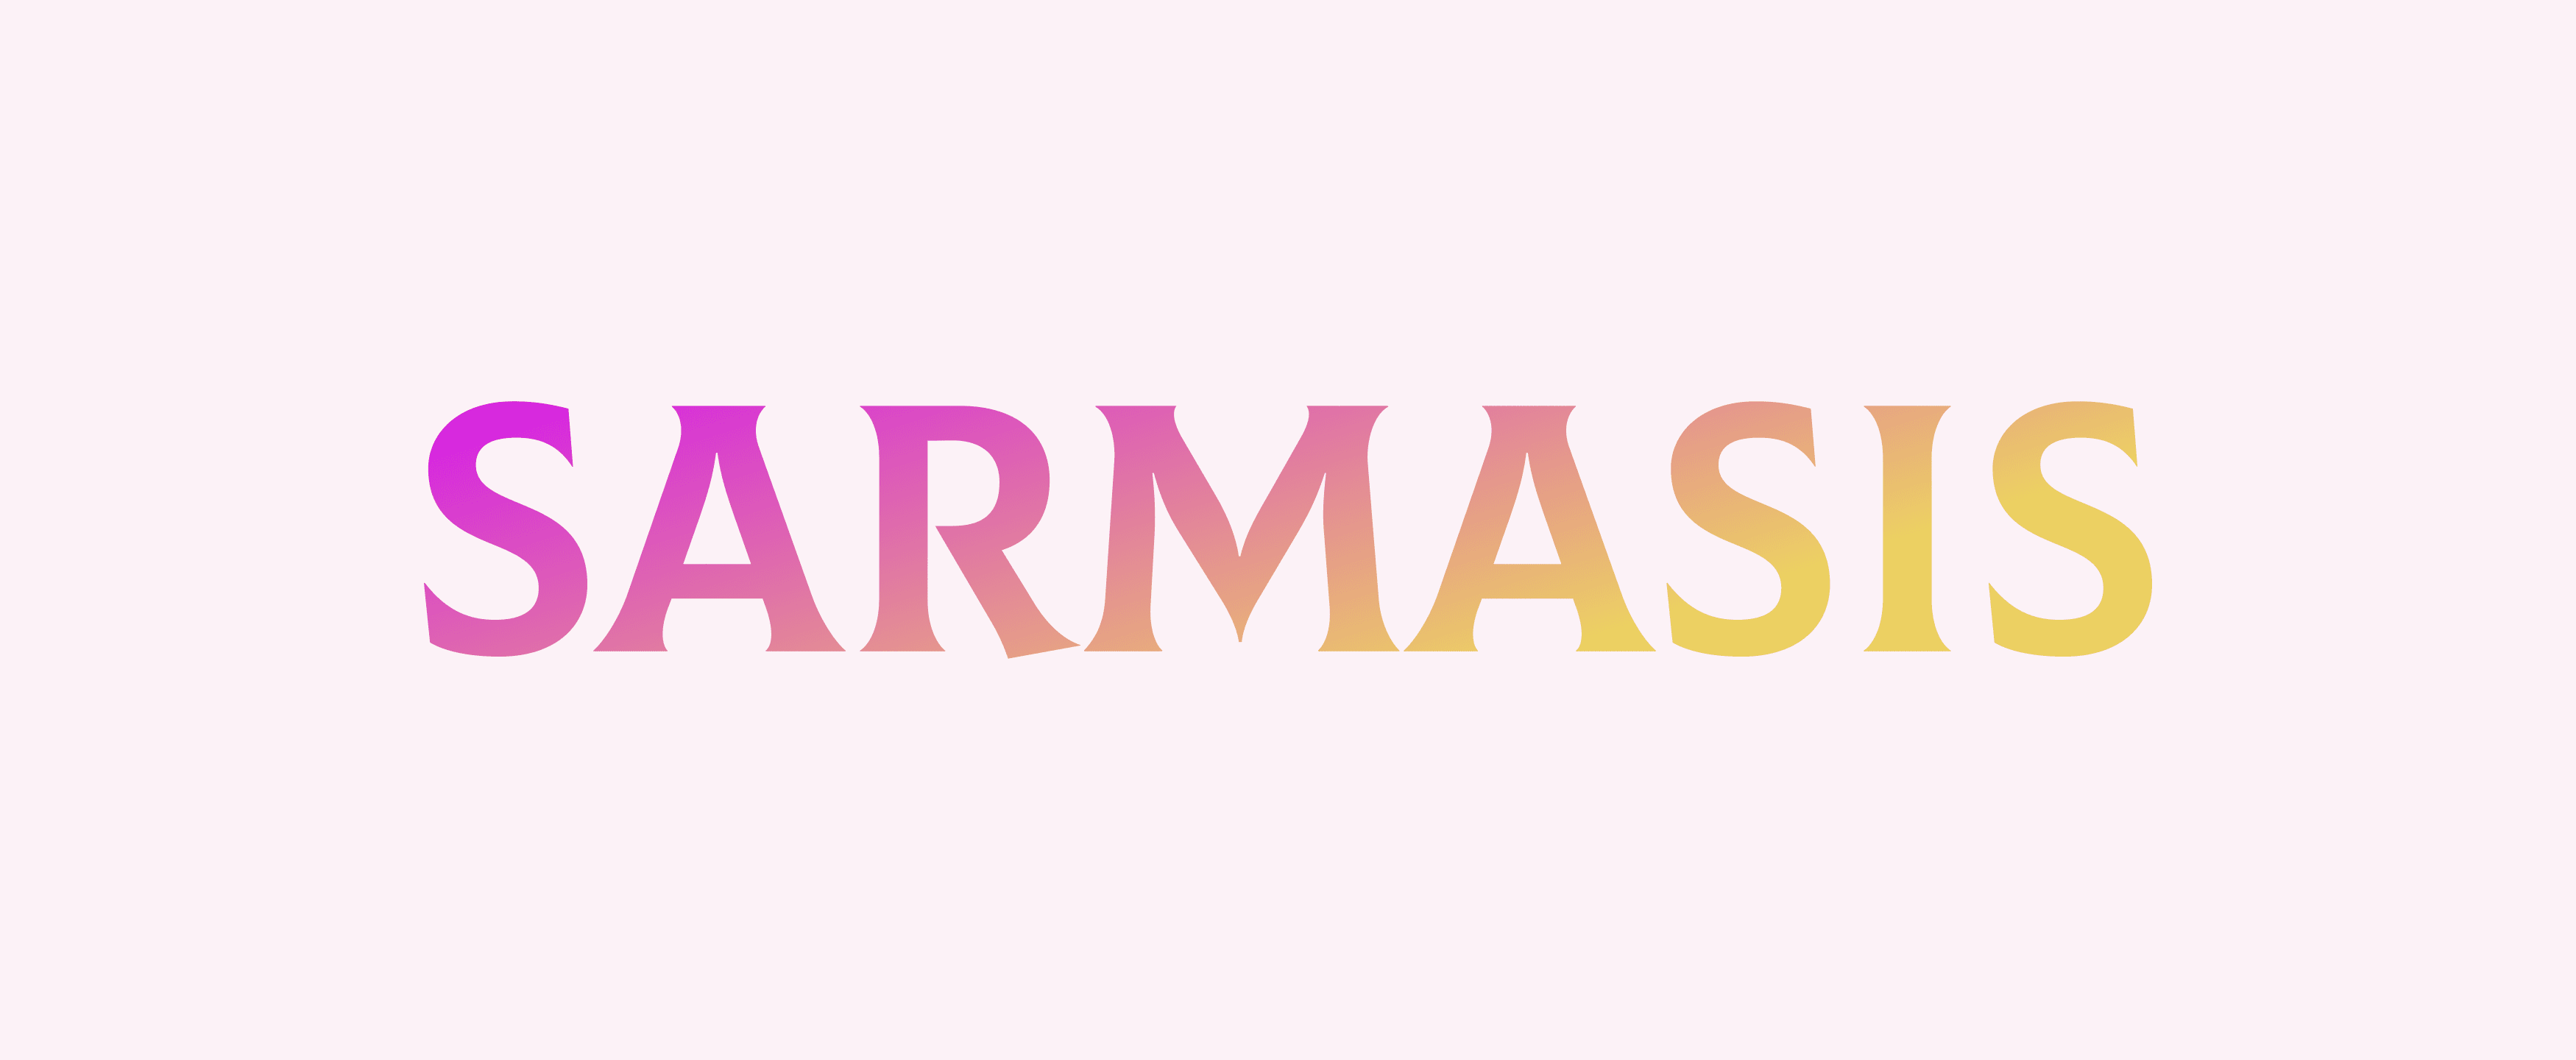 SARMASIS banner